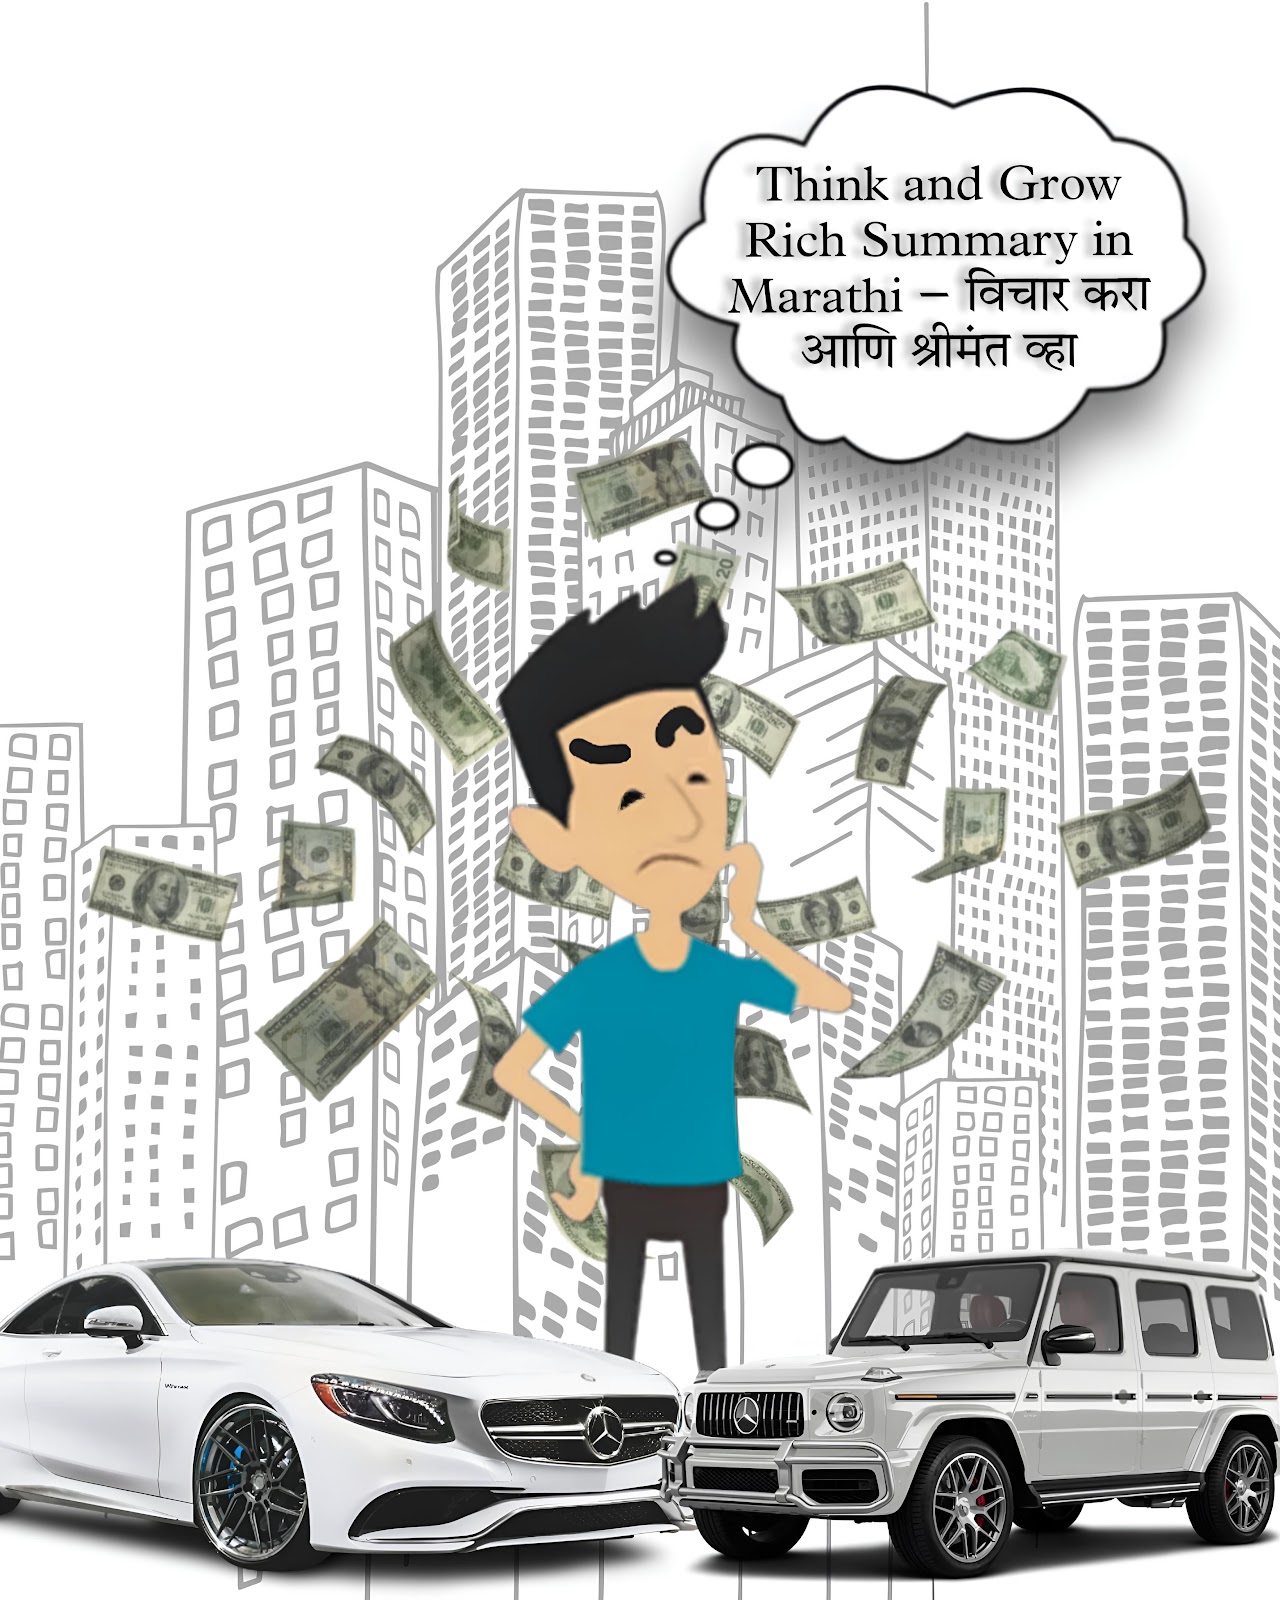 Think and Grow Rich Summary in Marathi – विचार करा आणि श्रीमंत व्हा